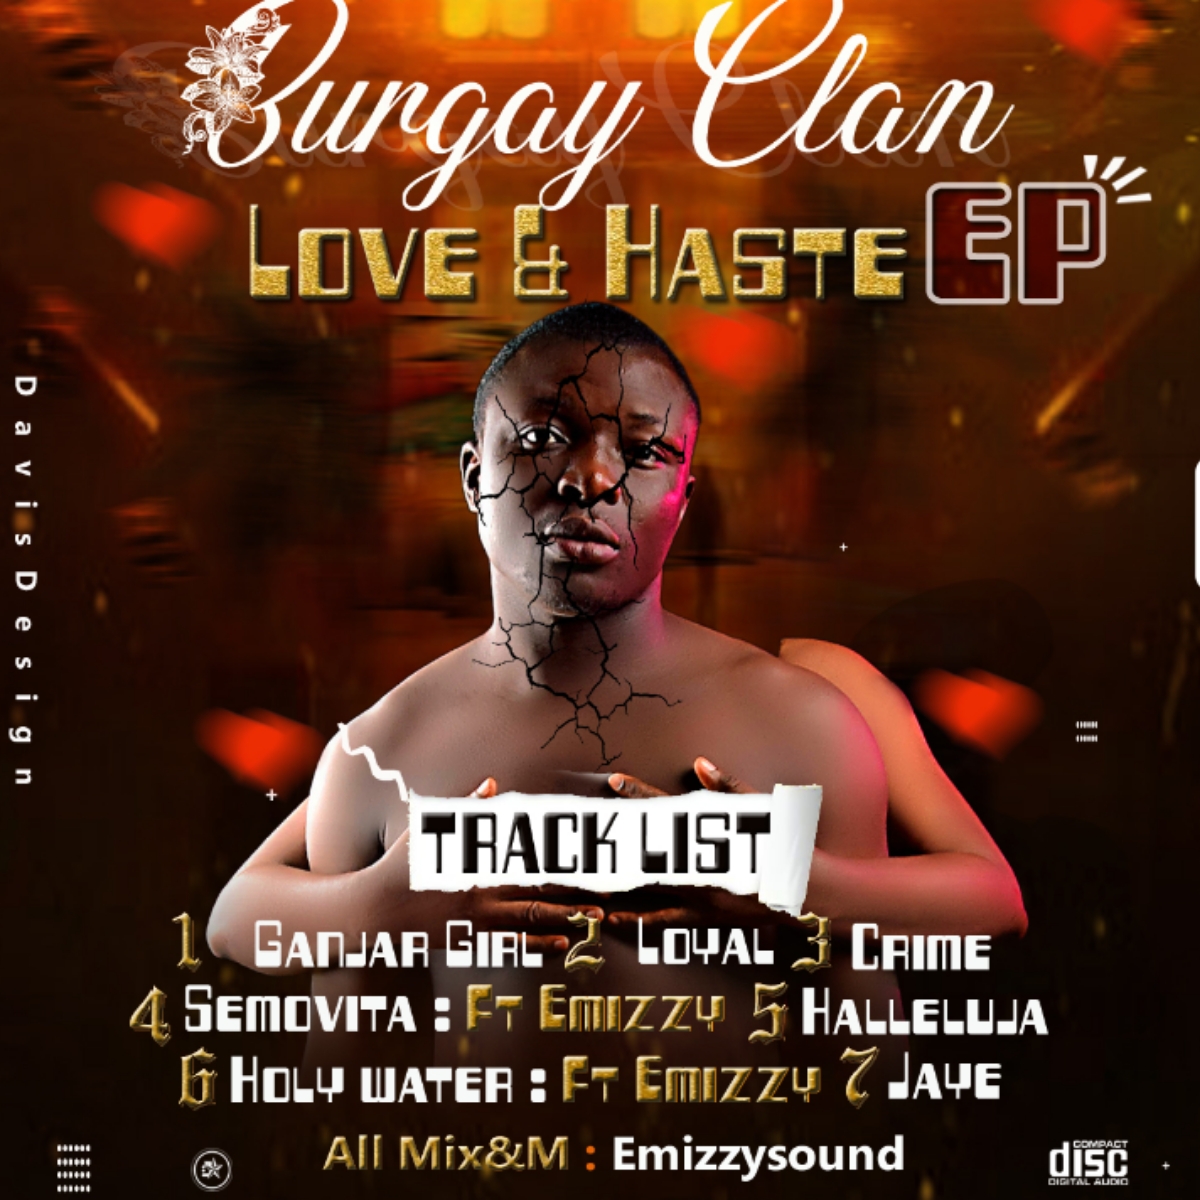 Burgay Clan -"Love & Haste" EP featuring Emizzy 19